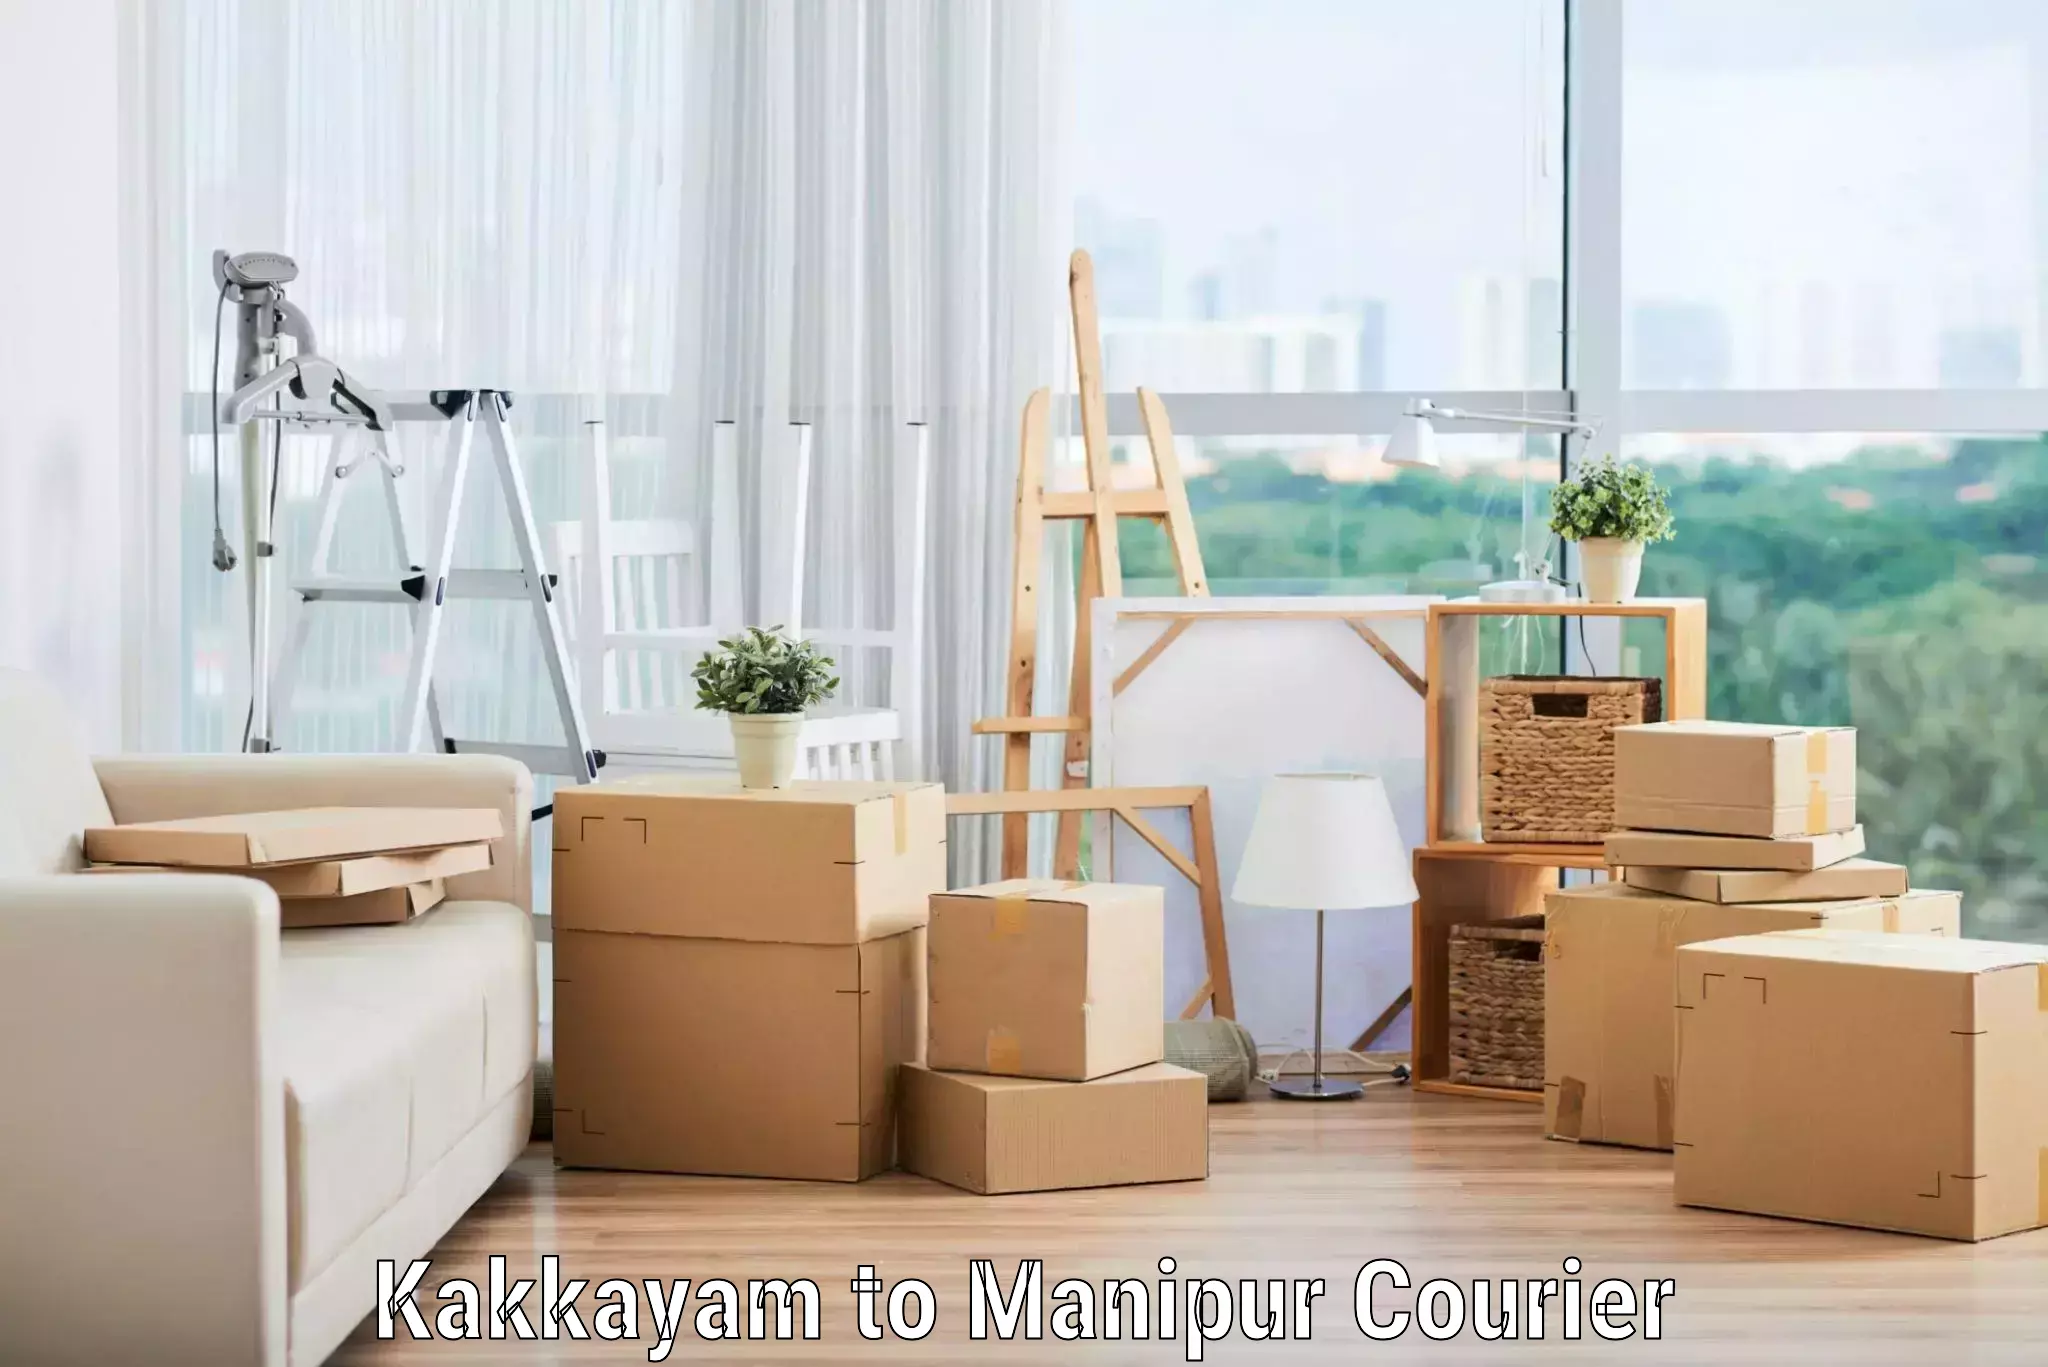 Furniture moving experts Kakkayam to Imphal